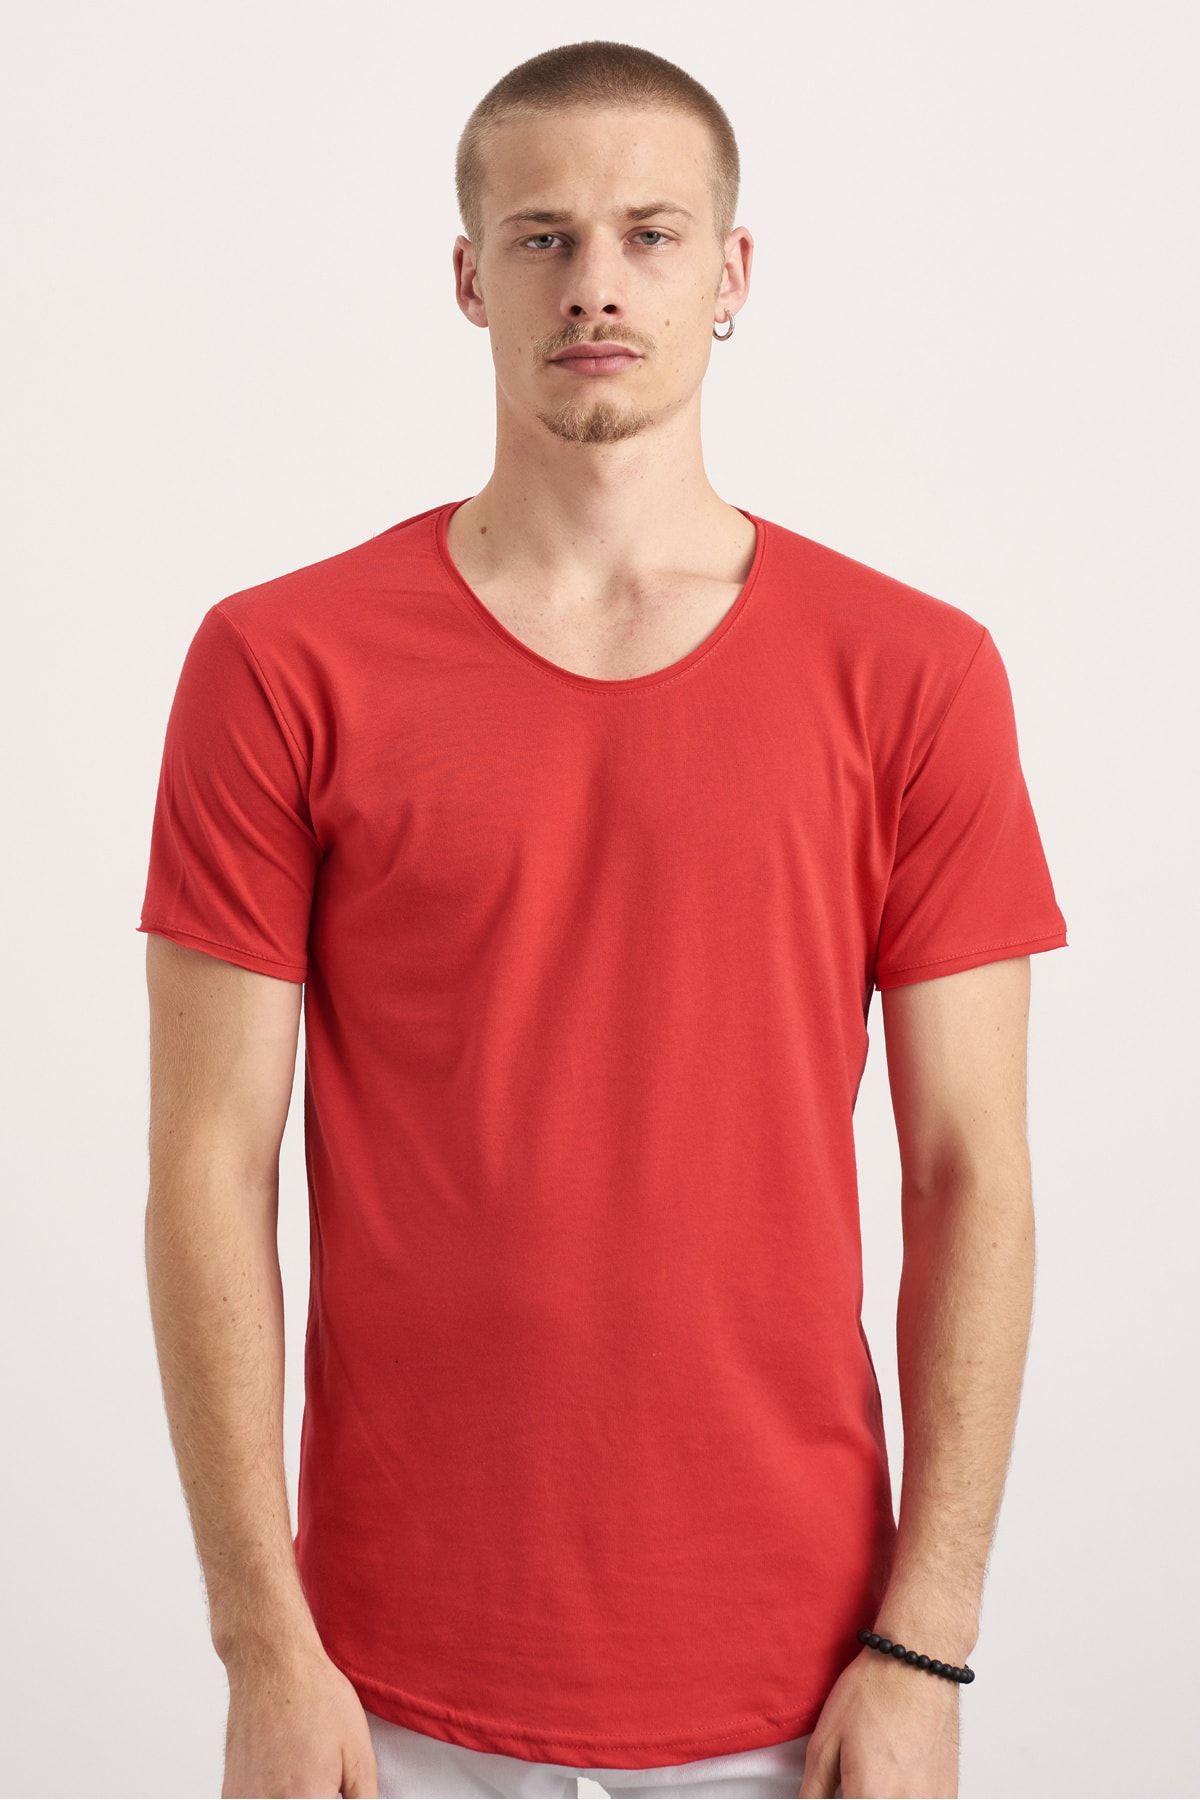 Tarz Cool Erkek Kırmızı Oval Etek Geniş Yaka %100 Pamuk Kısa Kollu Tişört